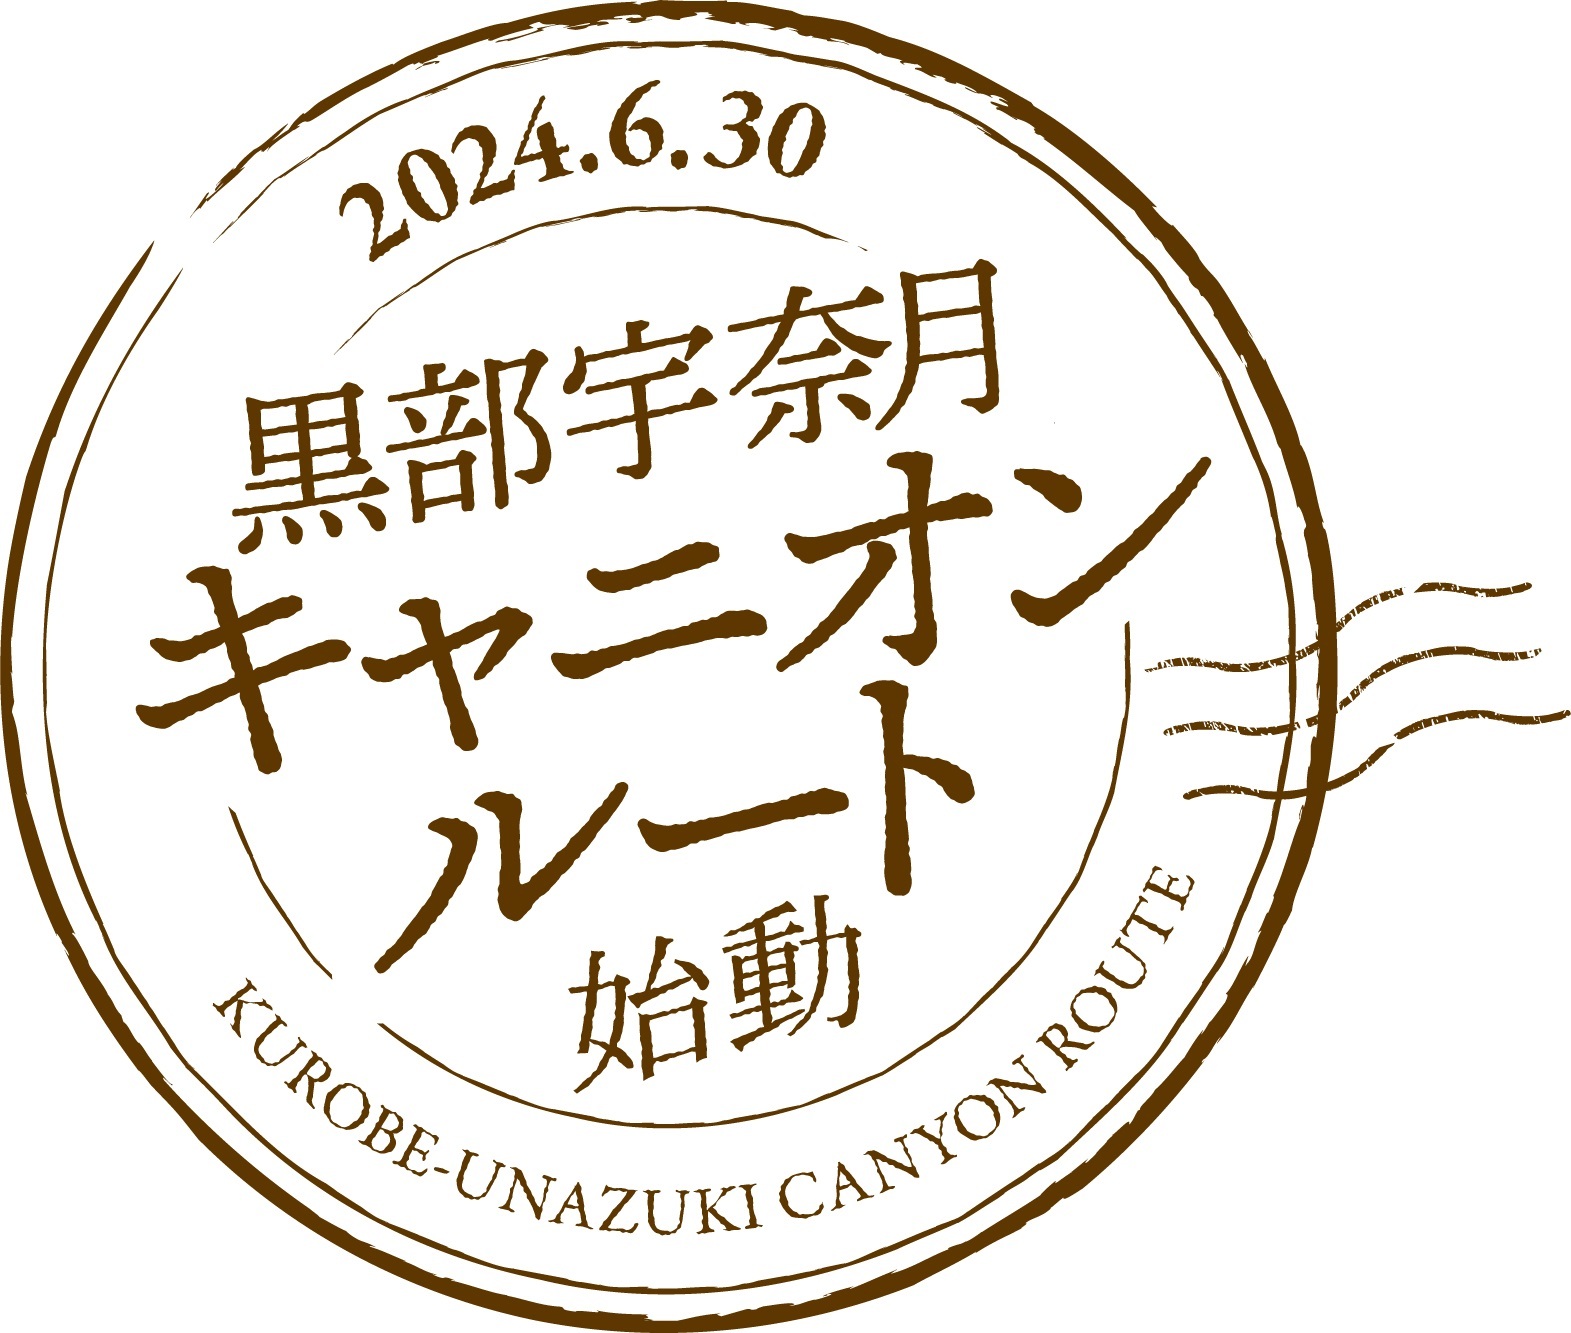 「黒部宇奈月キャニオンルート」の旅行商品販売開始日が
2024年1月29日に決定！